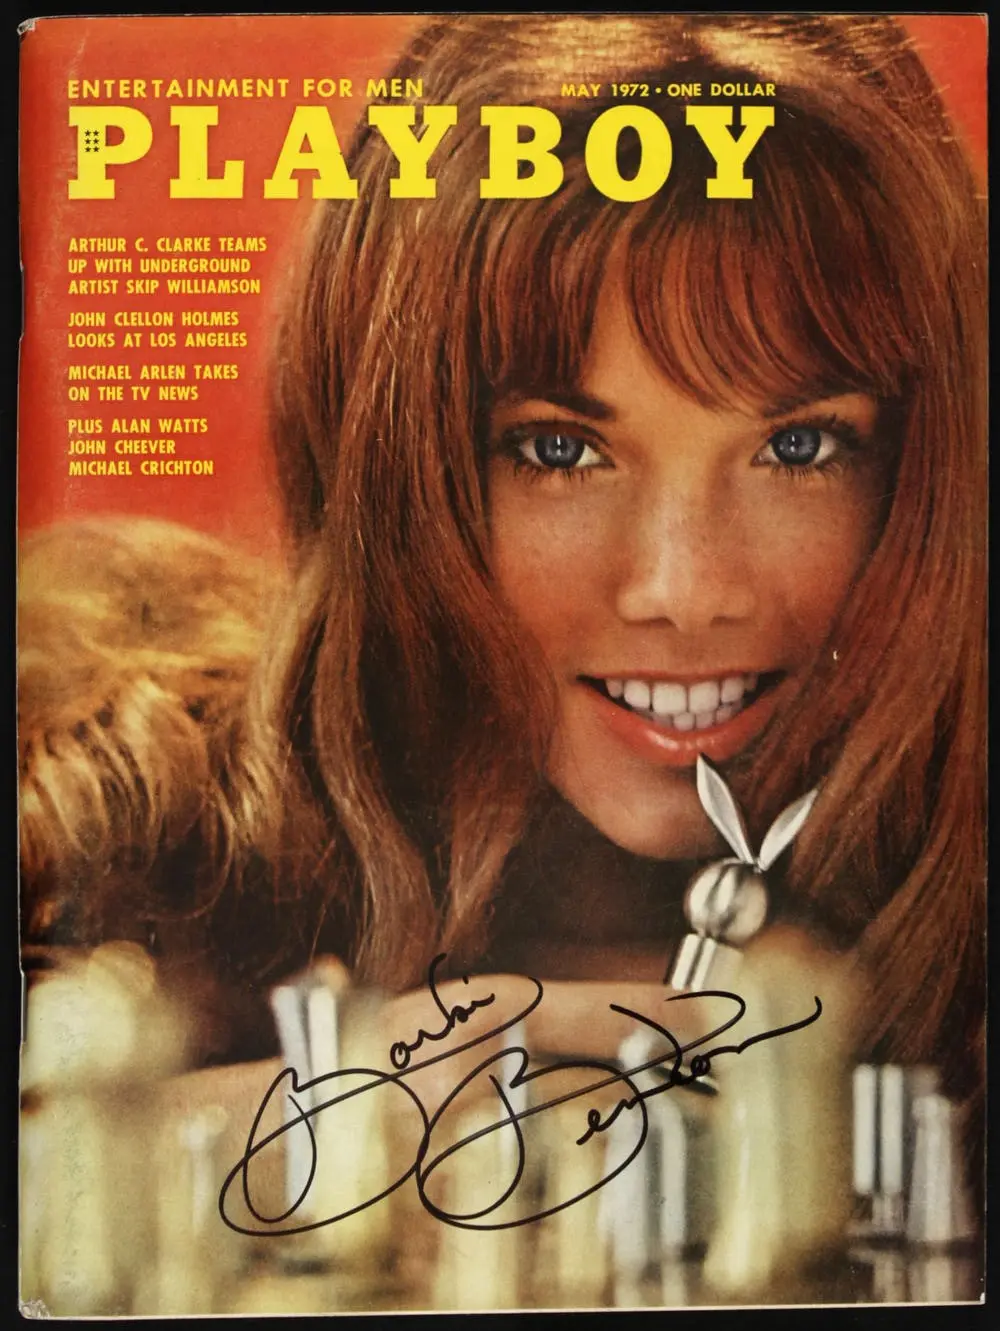 Model Playboy Barbi Benton saat berpose menjadi model cover (Foto: therichest.com)